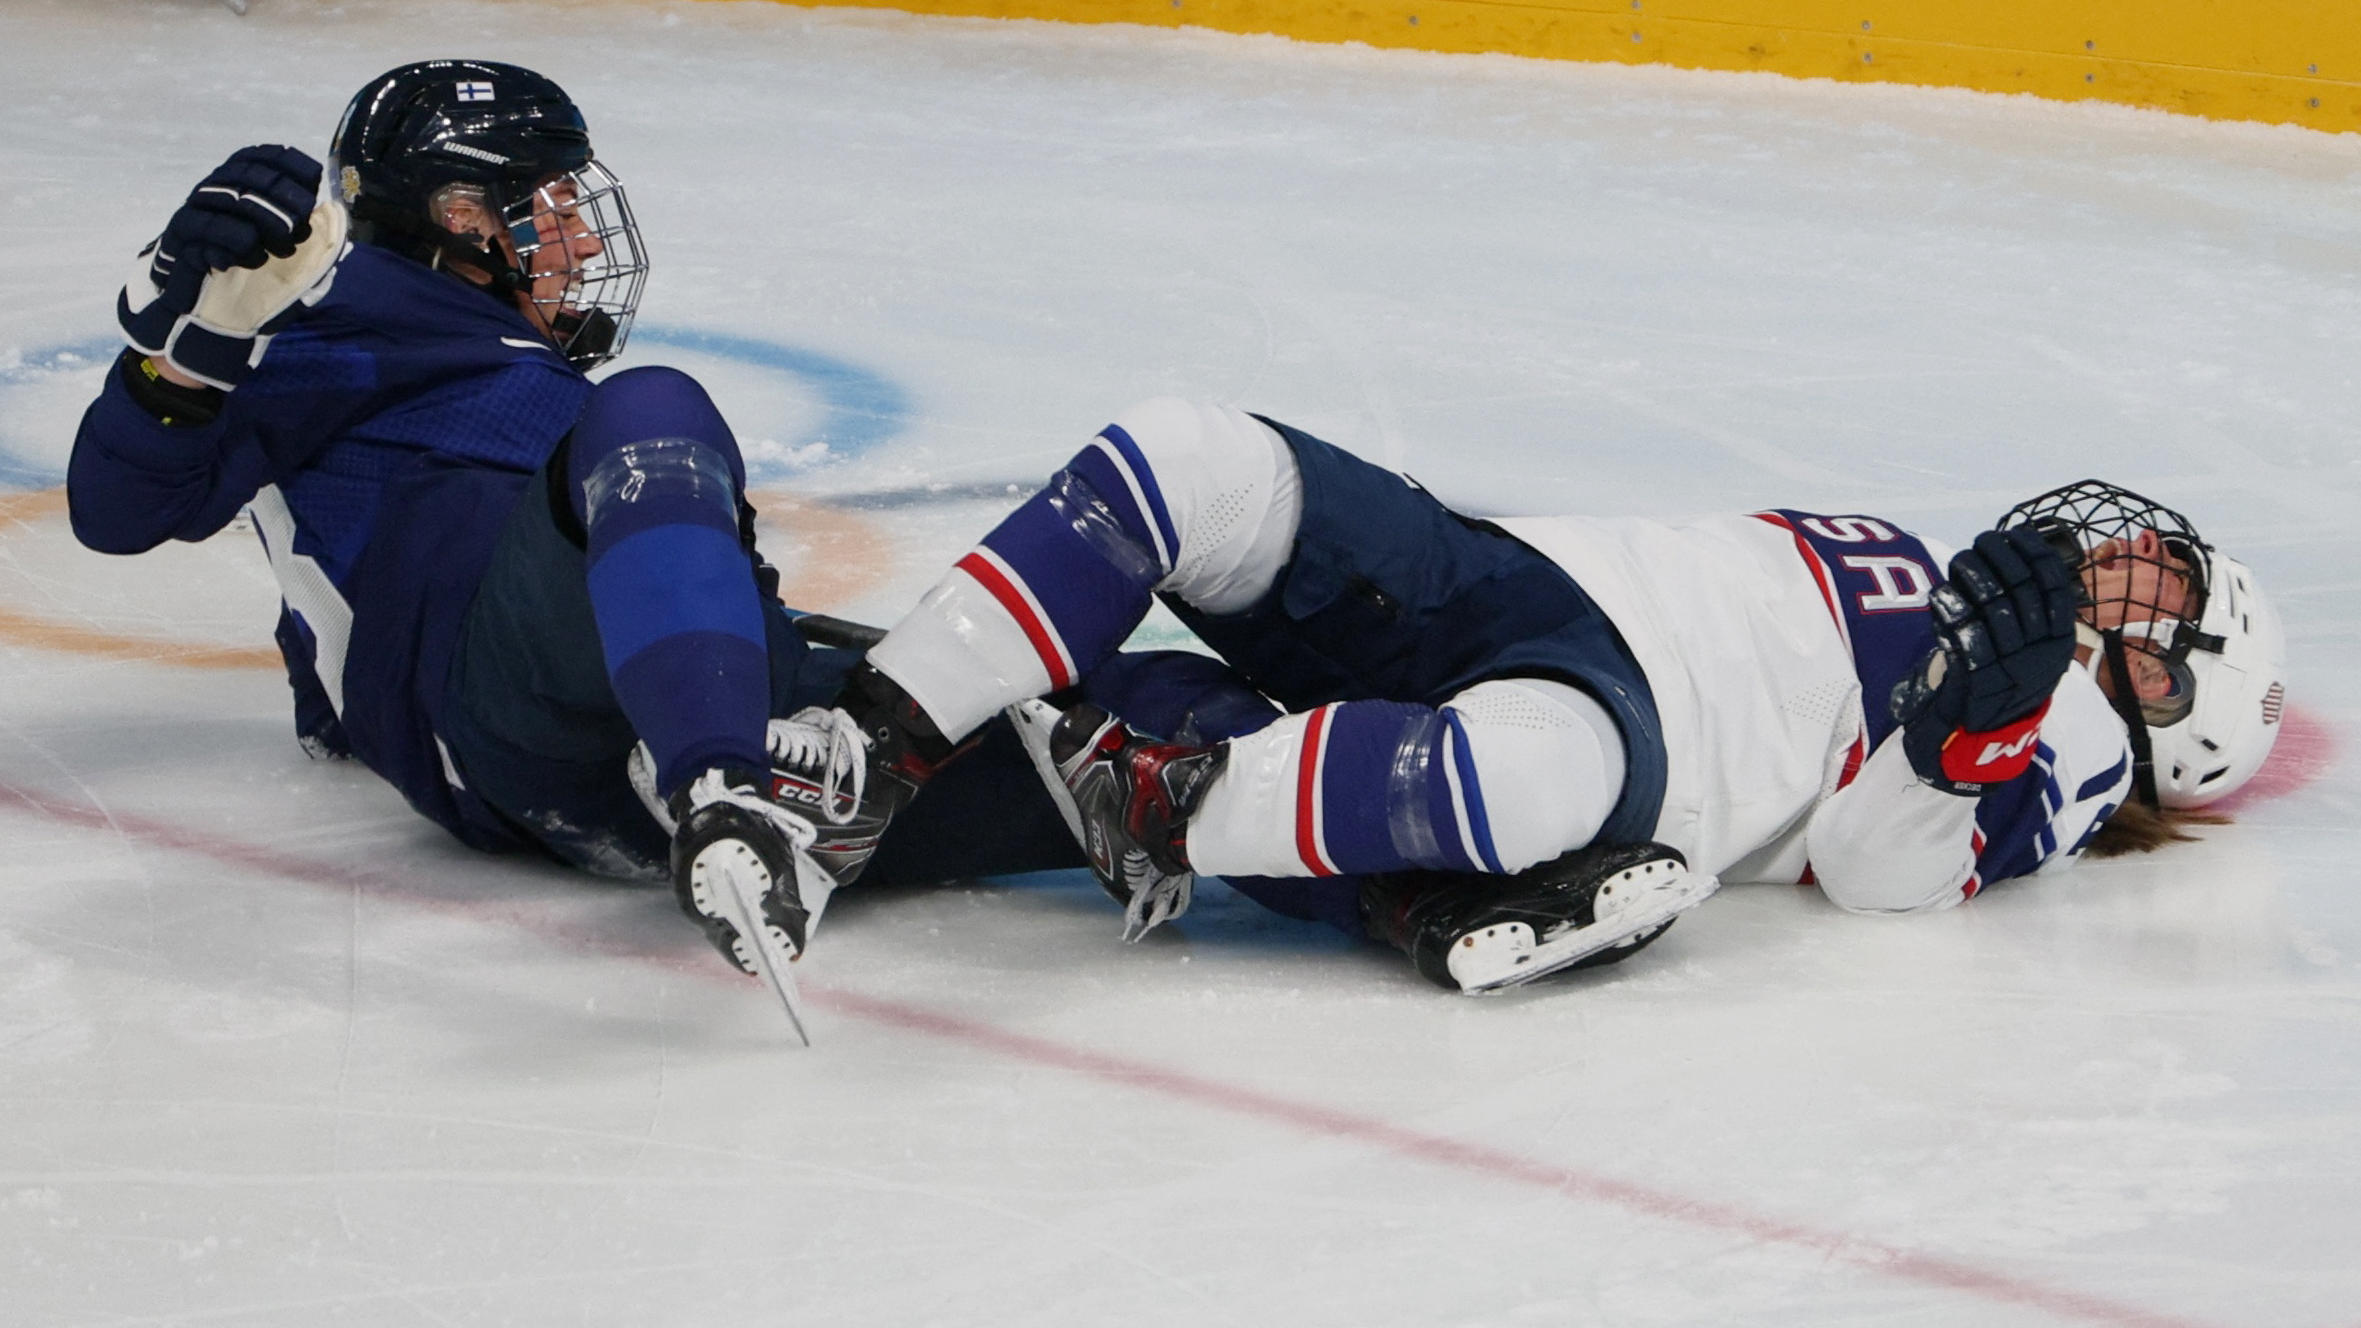 Olympia-Aus für Eishockey-Star nach Horror-Crash Fuß um 90 Grad verdreht